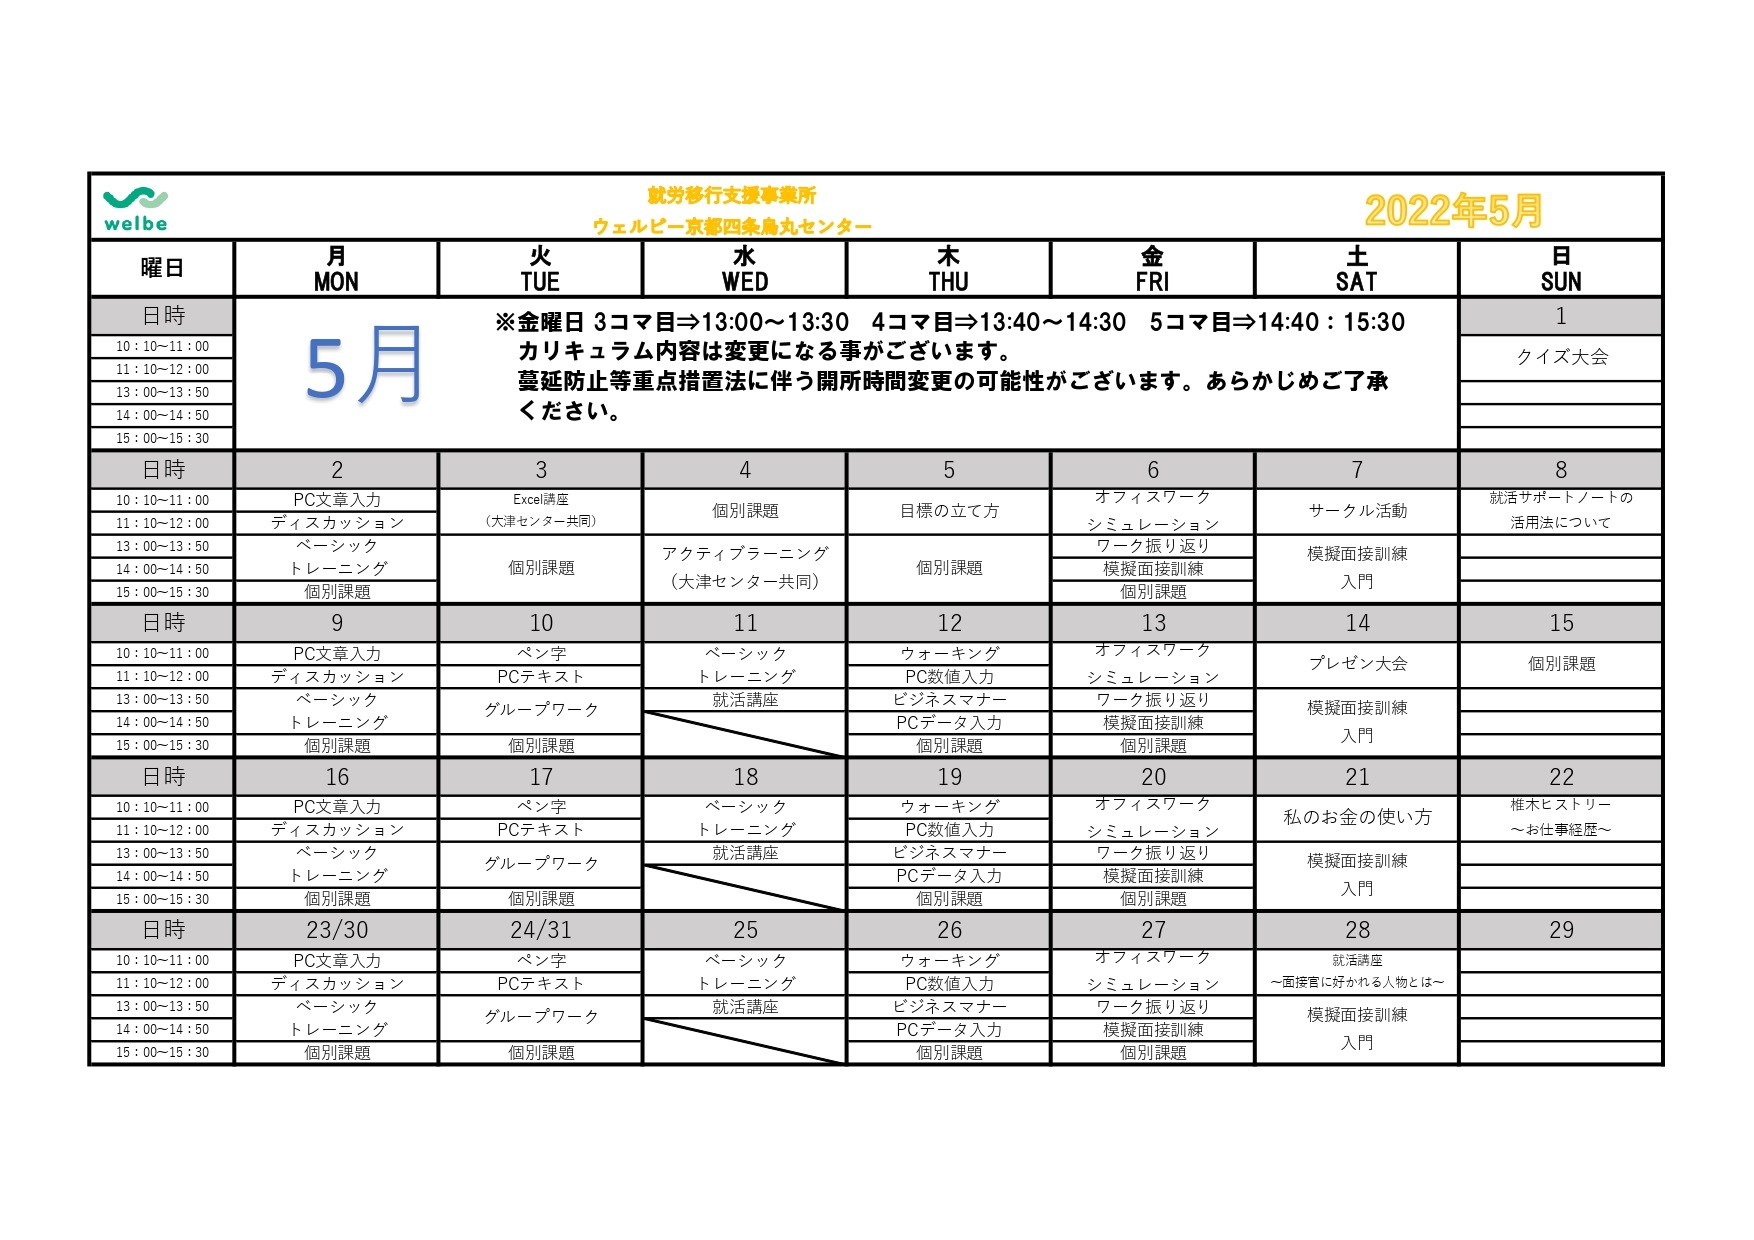 ウェルビー京都四条烏丸センター2022年5月カリキュラムカレンダー